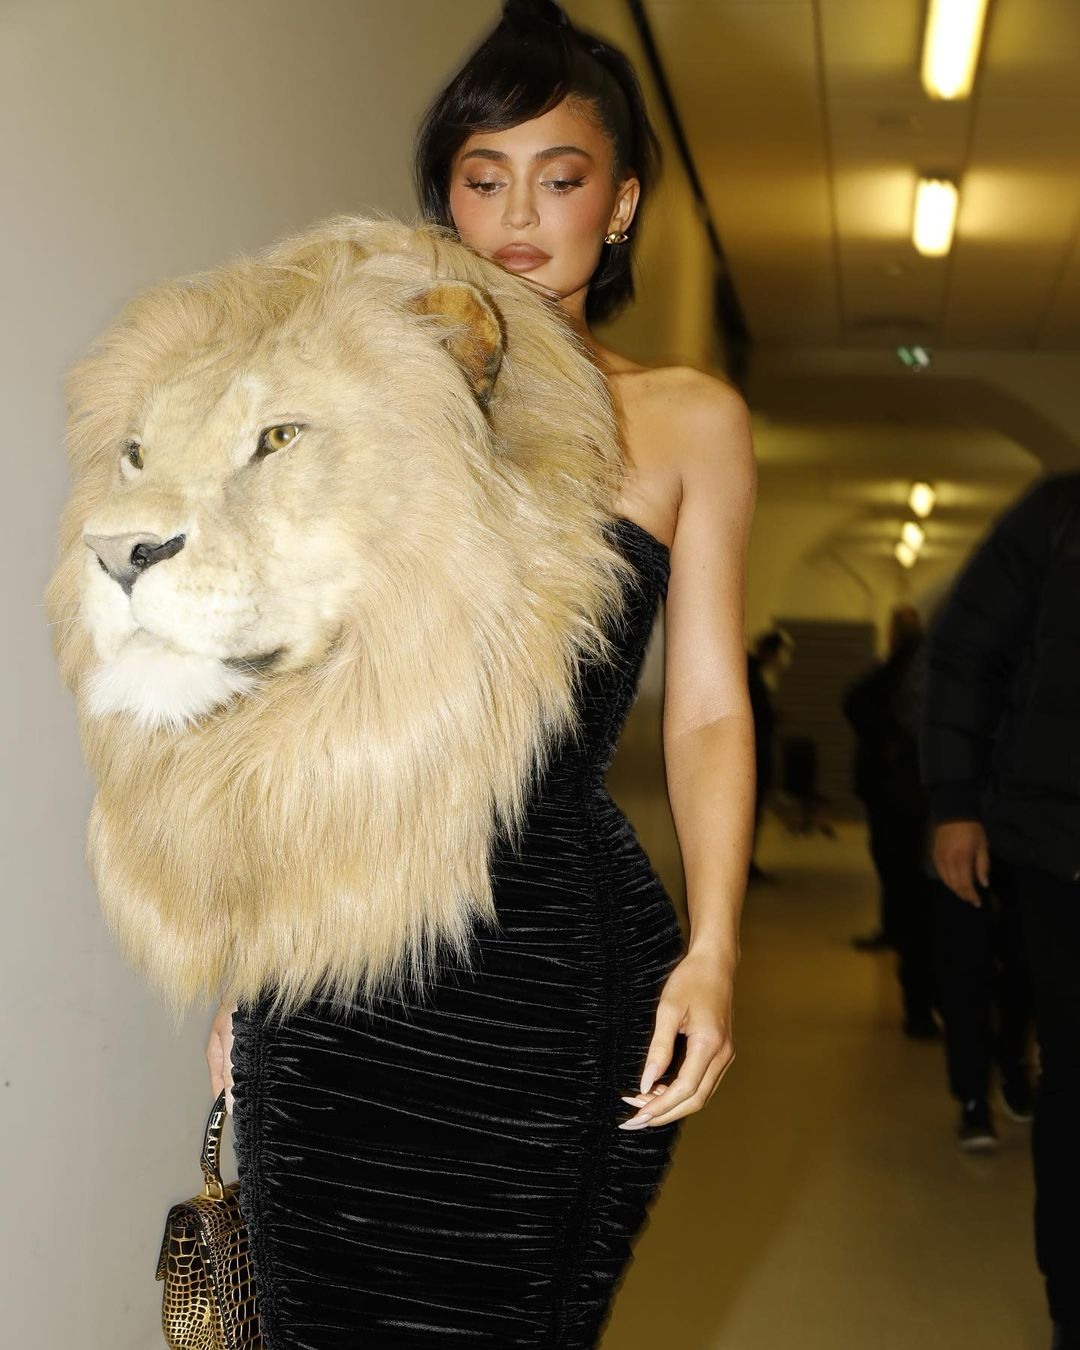 Internauci oburzeni kreacją Kylie Jenner. Gloryfikacja polowań na zwierzęta Zaskakujące stanowisko (1)